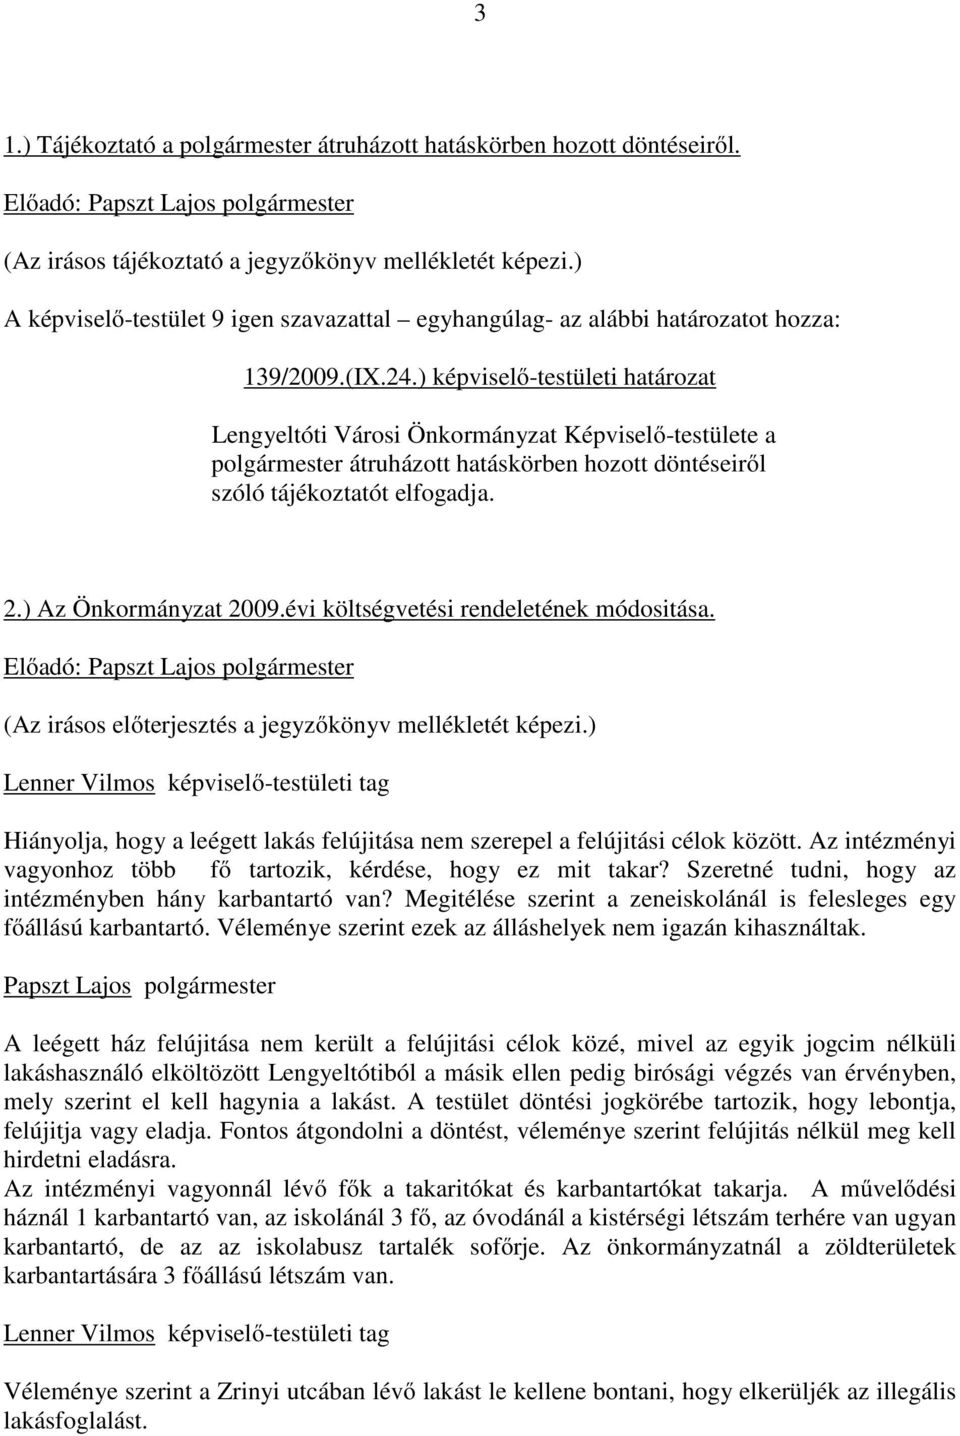 ) képviselő-testületi határozat Lengyeltóti Városi Önkormányzat Képviselő-testülete a polgármester átruházott hatáskörben hozott döntéseiről szóló tájékoztatót elfogadja. 2.) Az Önkormányzat 2009.